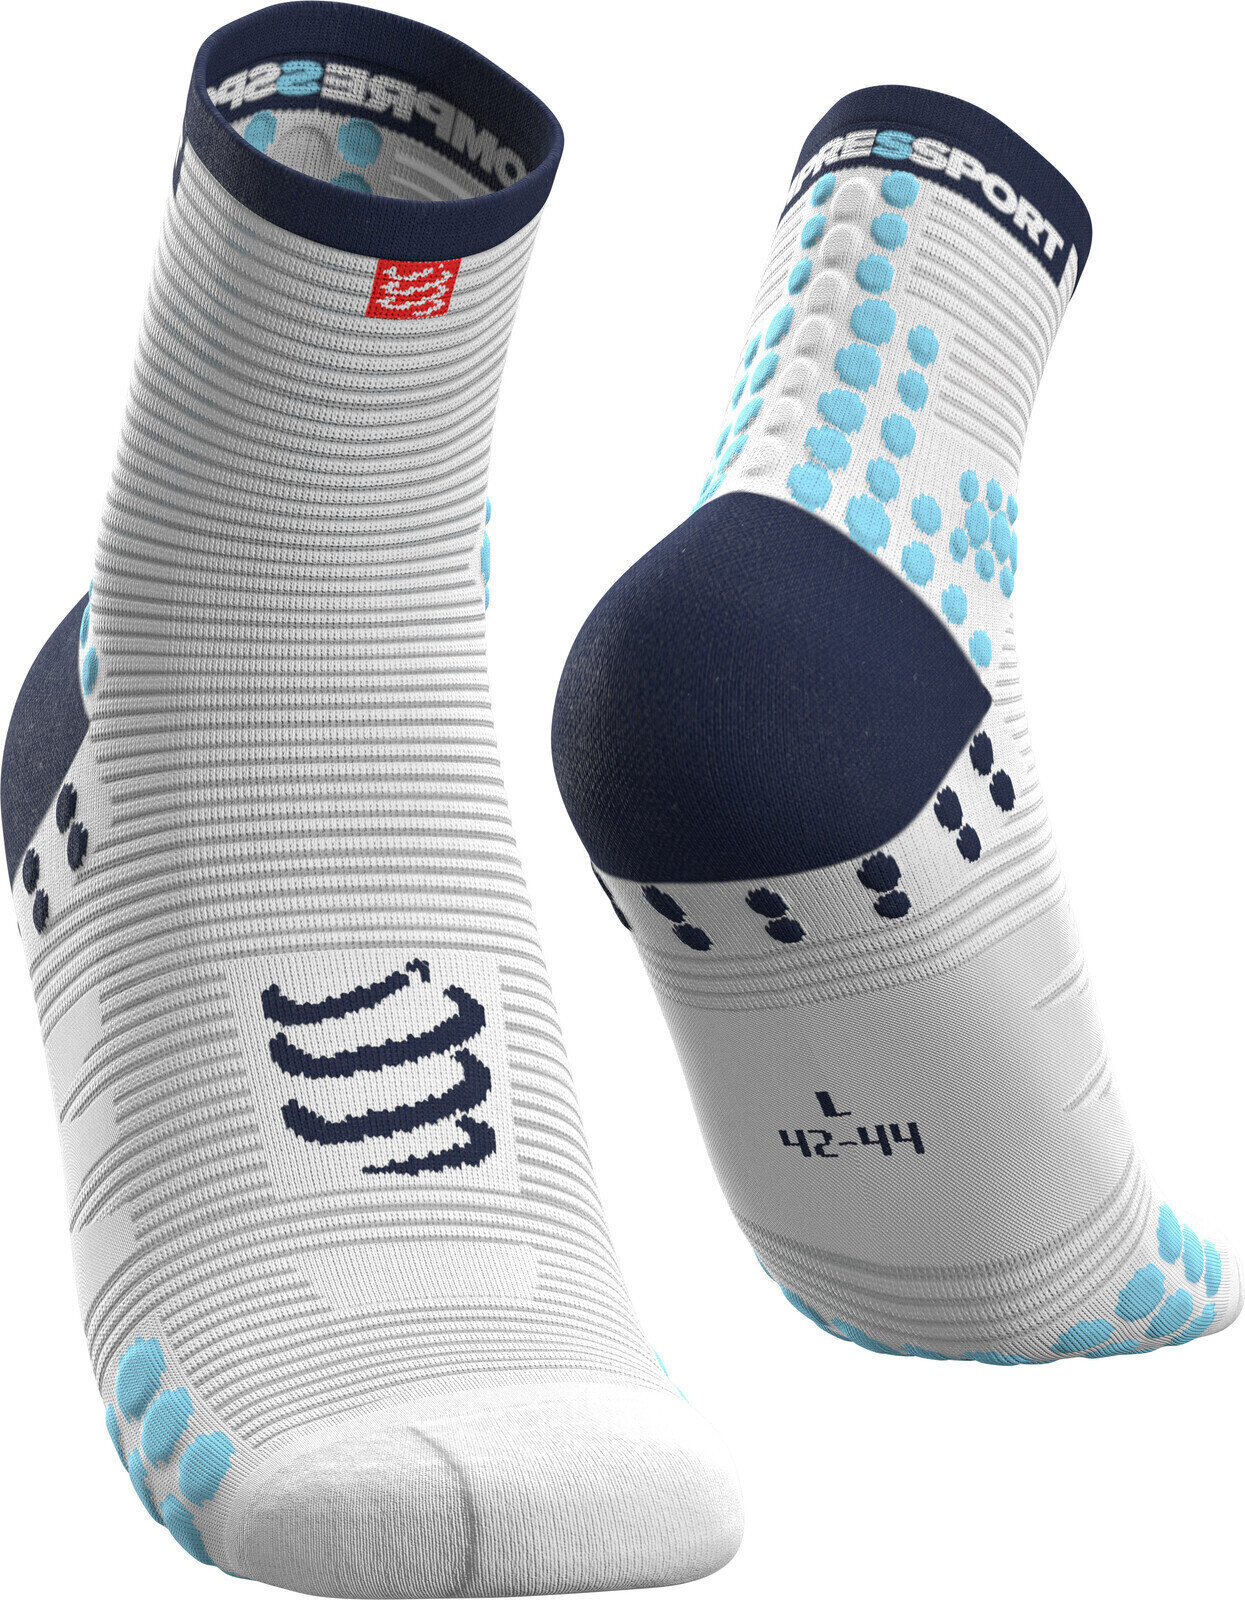 Κάλτσες Τρεξίματος Compressport Pro Racing v3.0 Run High Λευκό-Μπλε T1 Κάλτσες Τρεξίματος